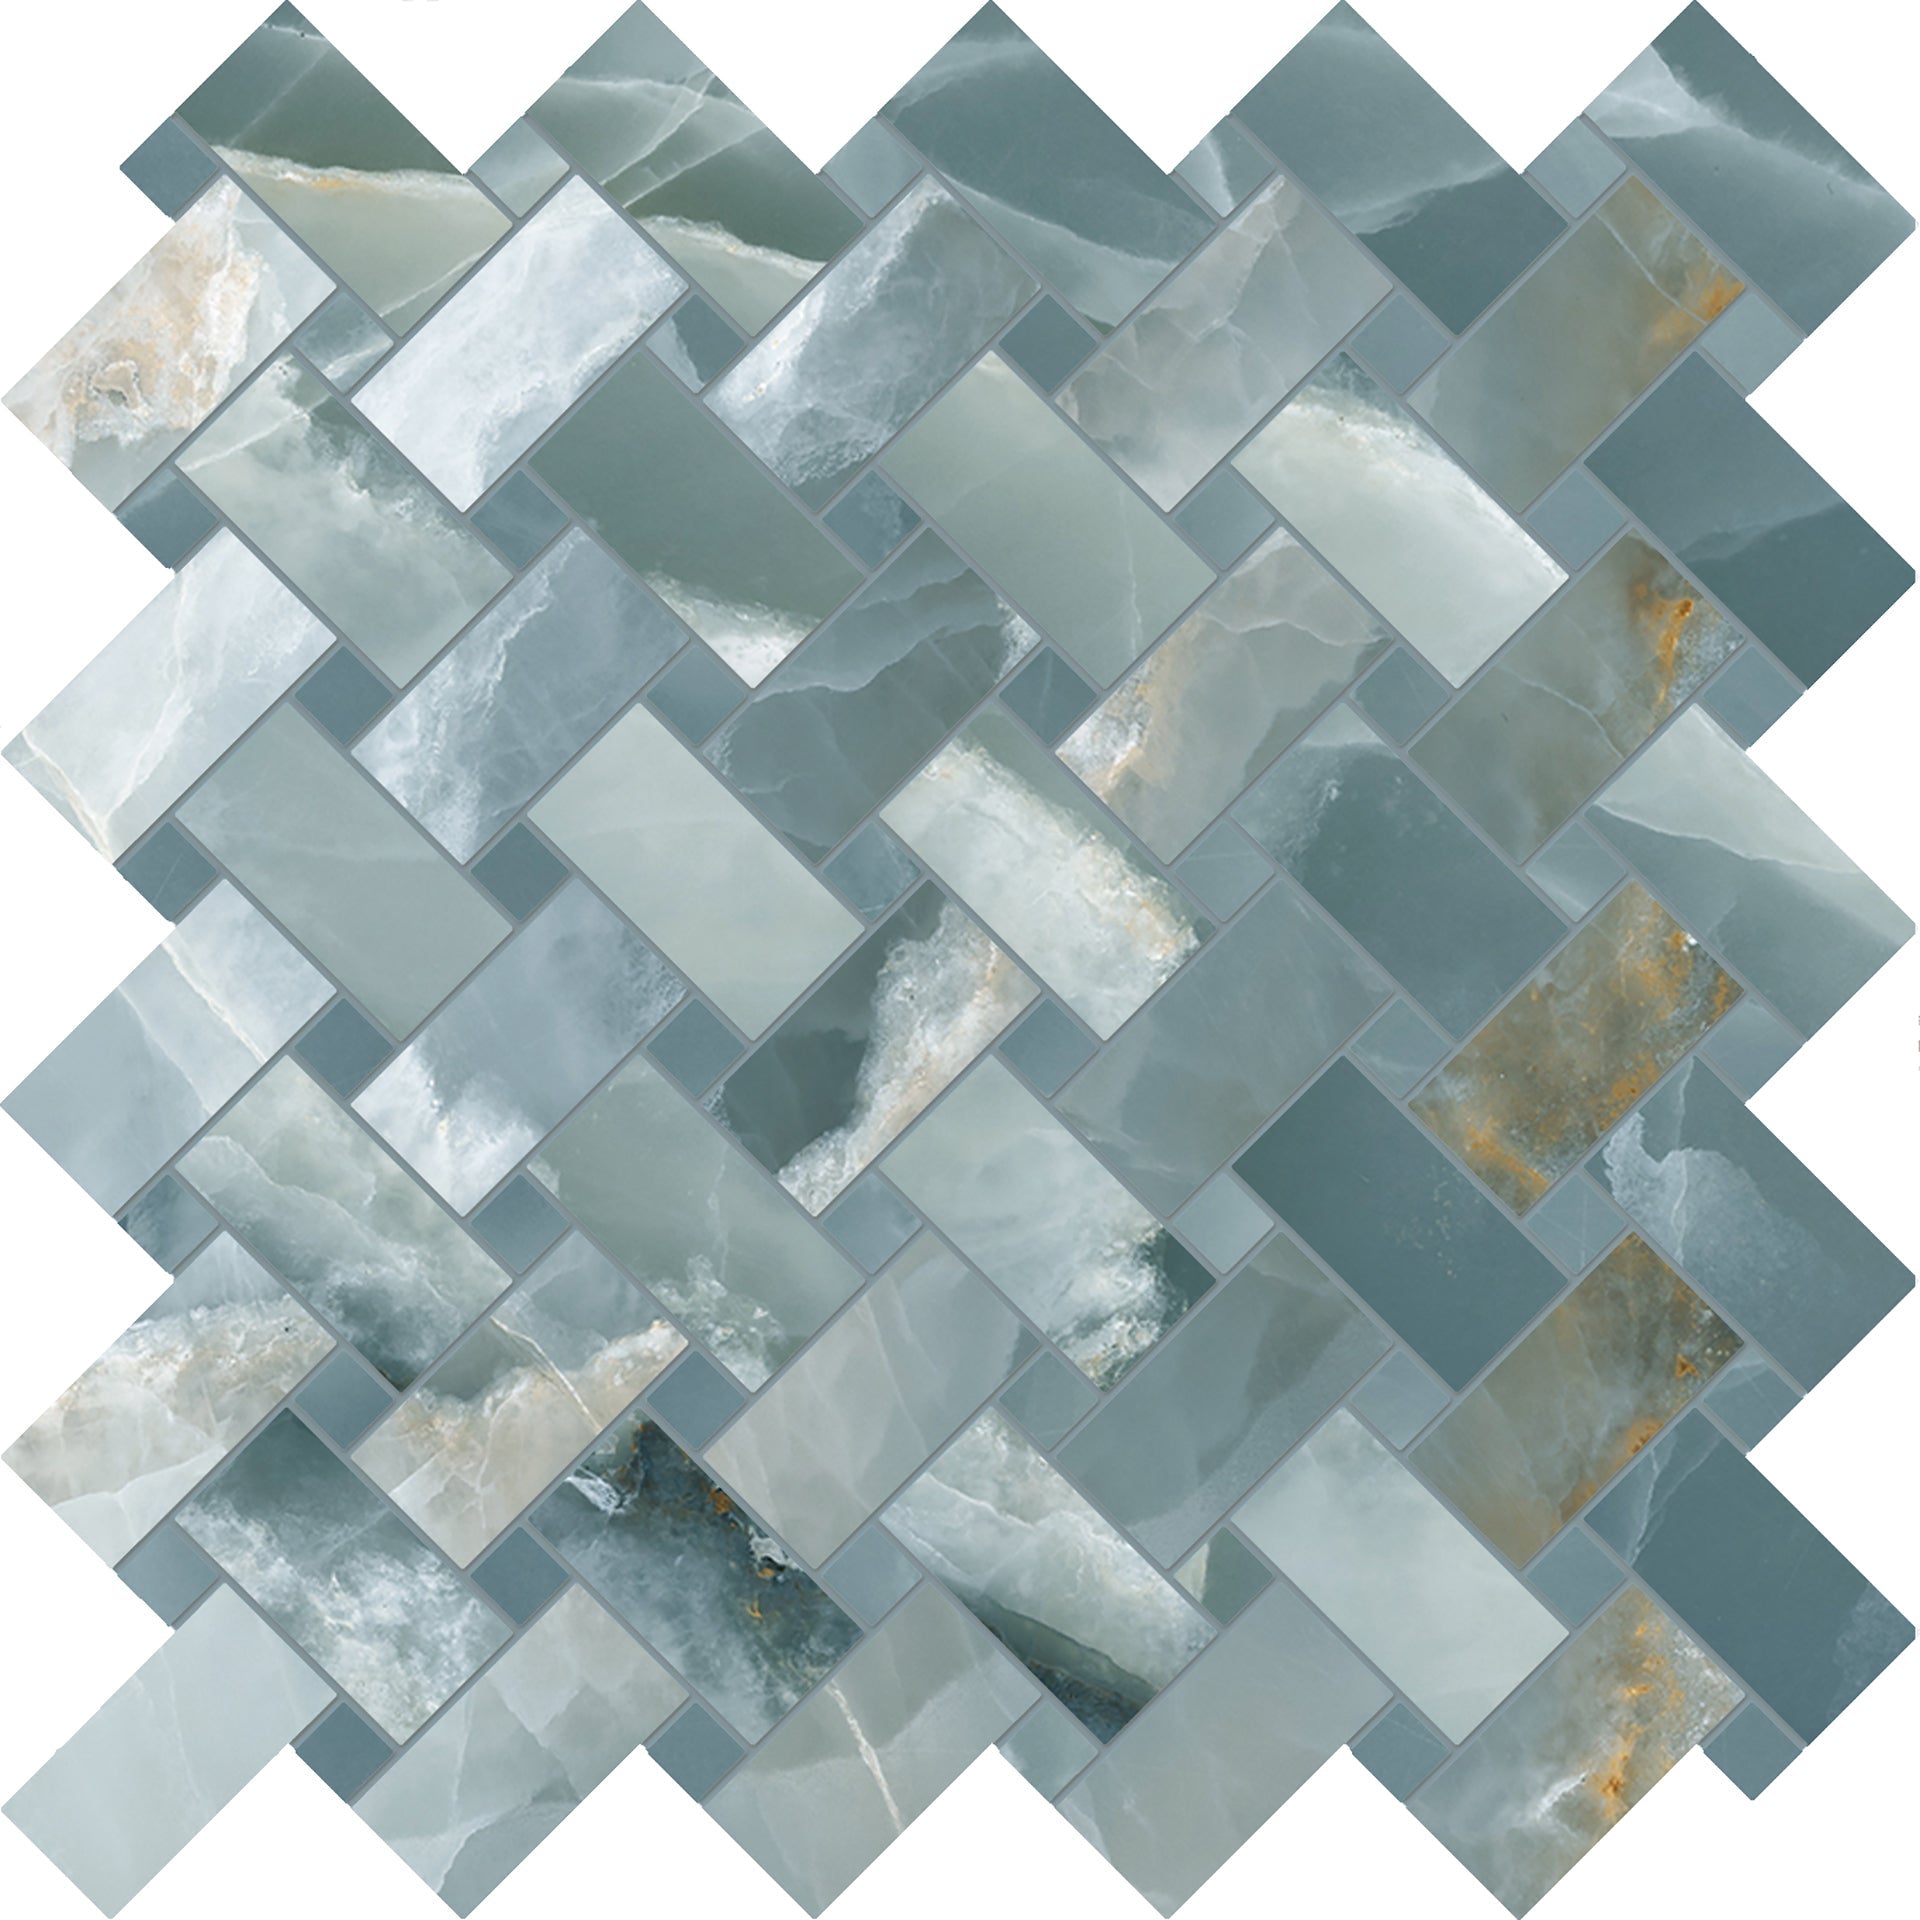 onyx mosaic tile backsplash